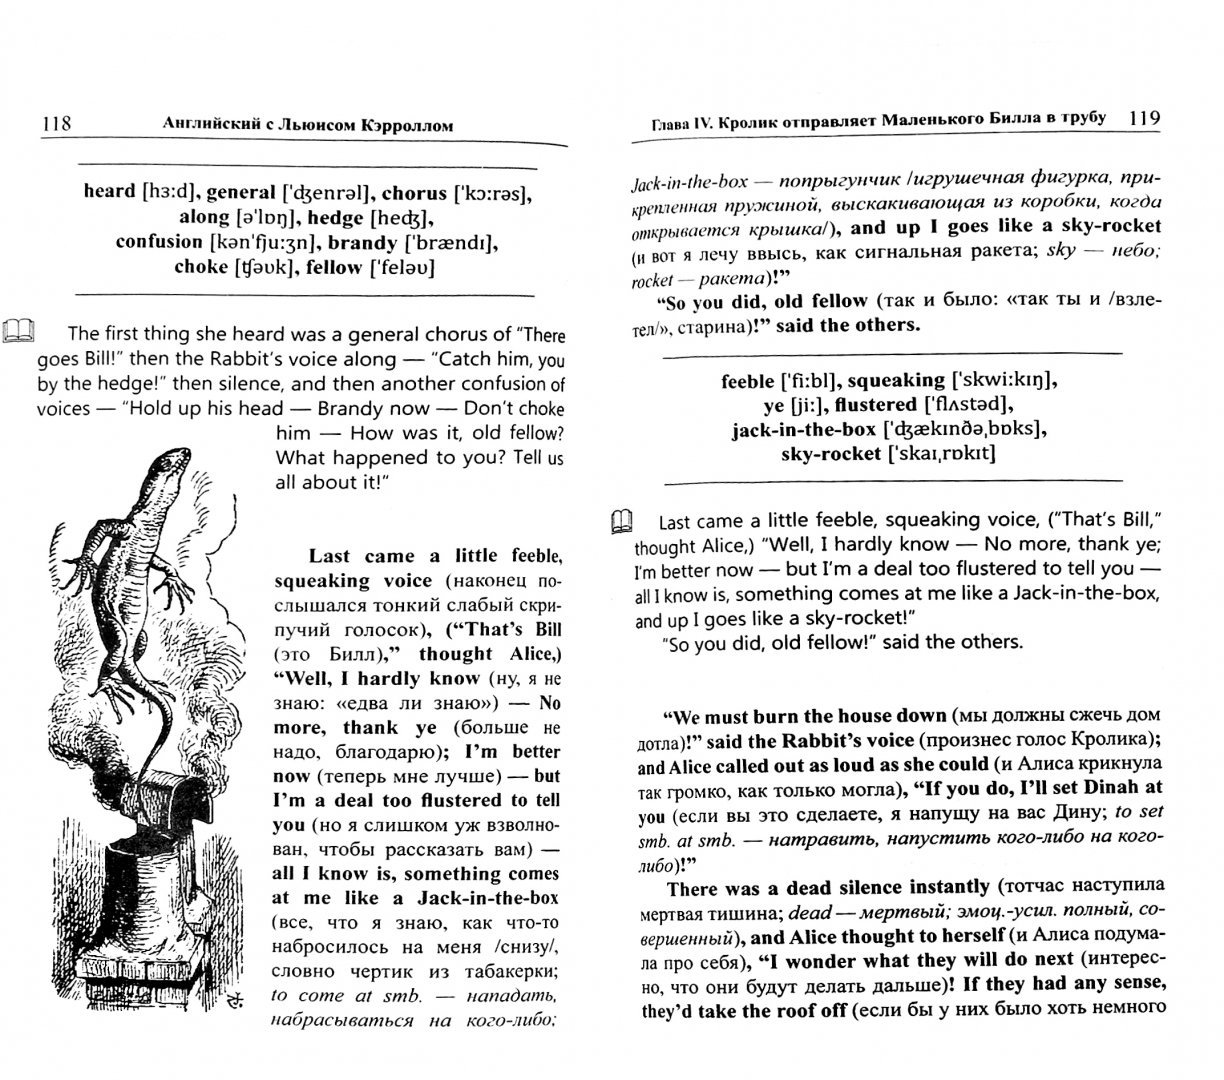 Иллюстрация 1 из 5 для Английский с Льюисом Кэрроллом. Алиса в Стране Чудес - Льюис Кэрролл | Лабиринт - книги. Источник: Лабиринт